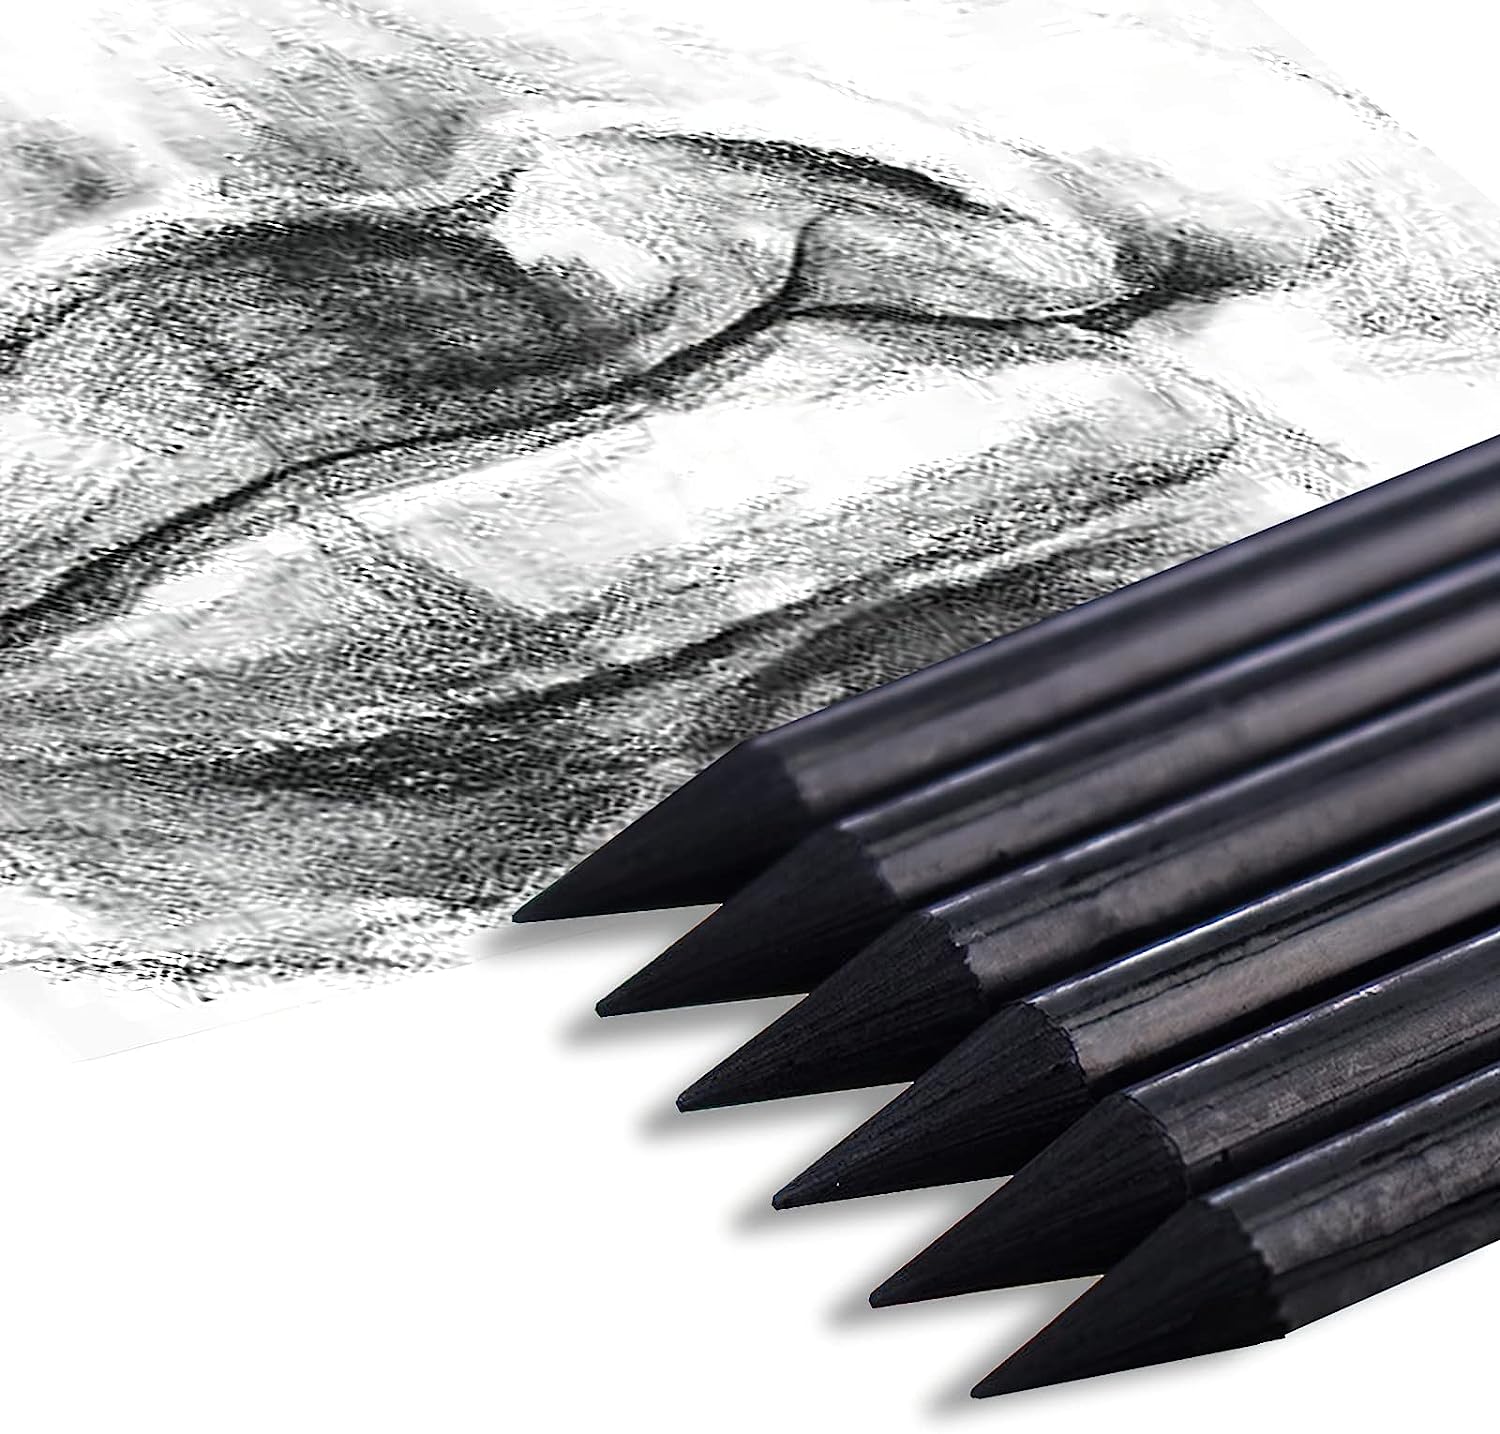 Marie's 24pcs Non-Wood Whole-Lead Core Graphite Charcoal Sticks Pencils